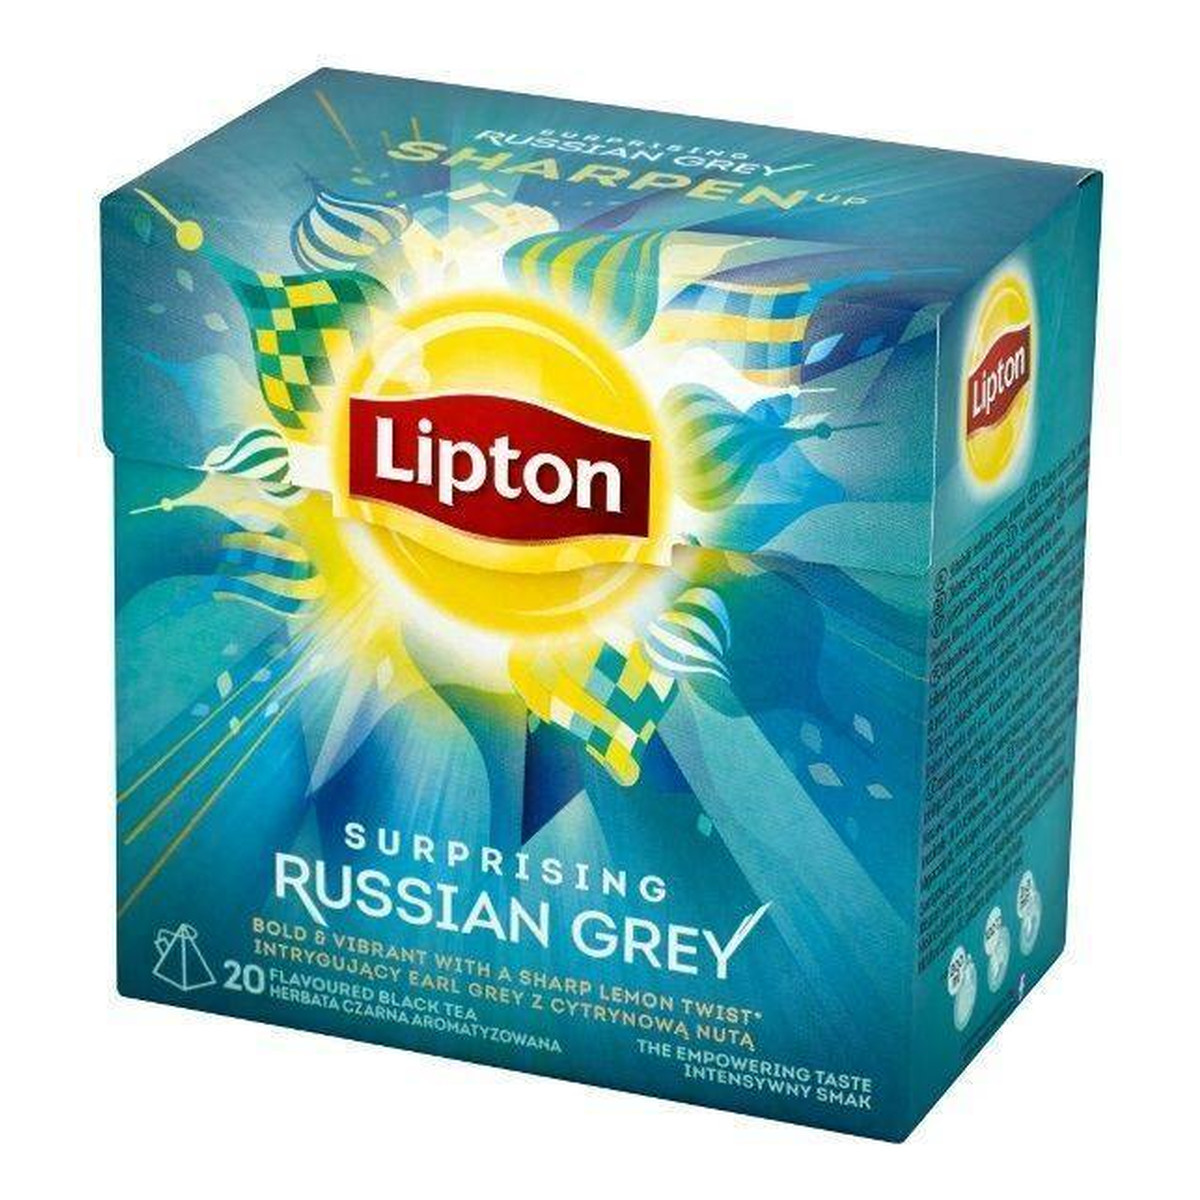 Lipton Russian Grey herbata czarna aromatyzowana 20 torebek 40g